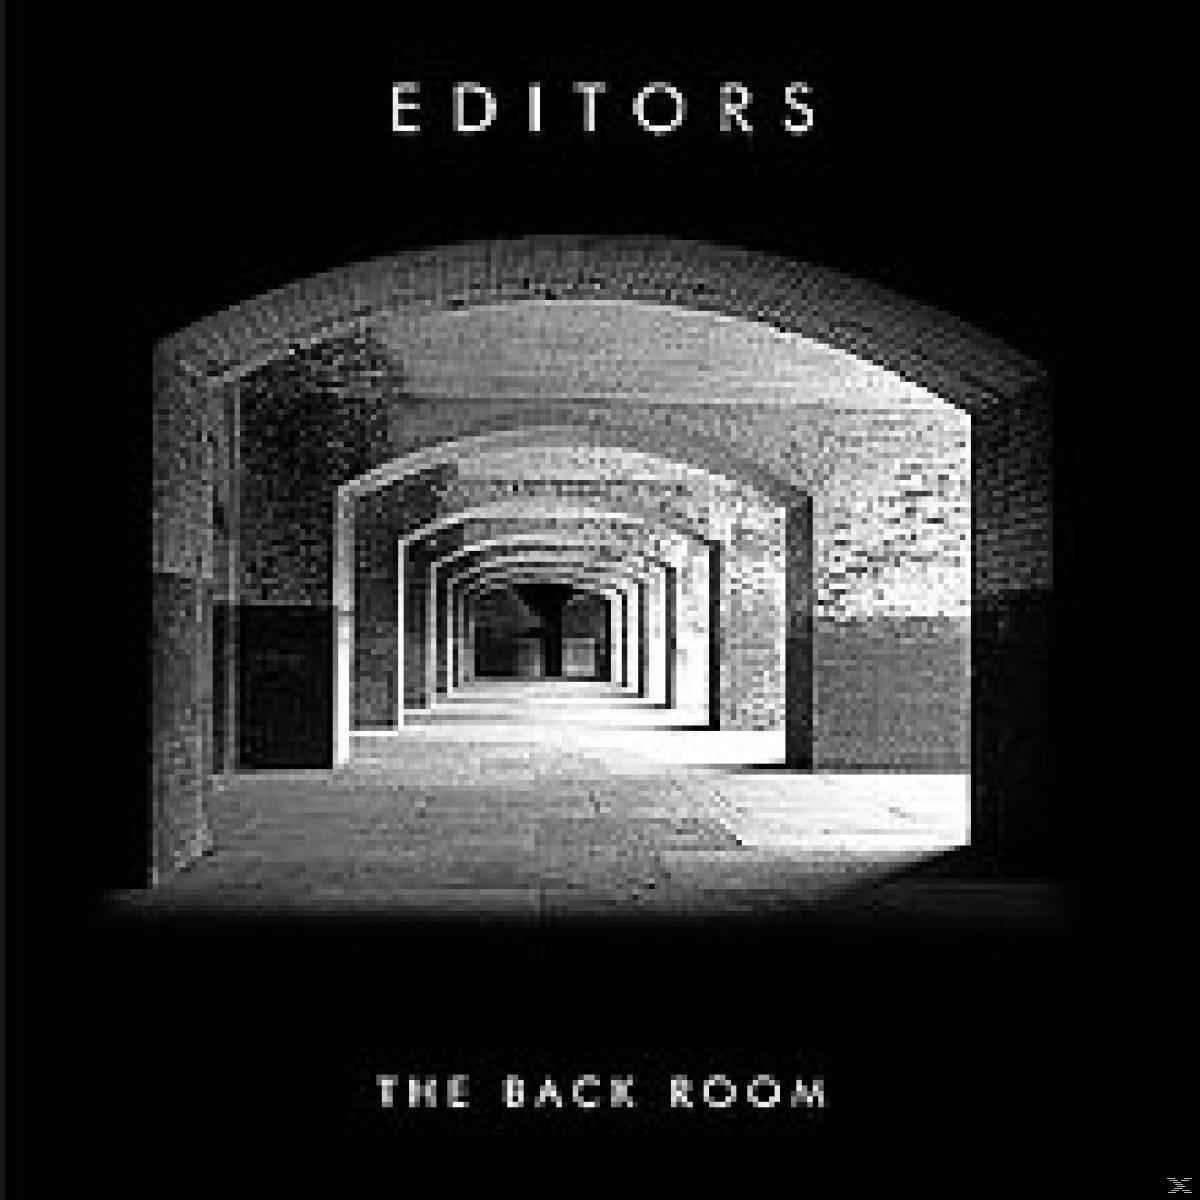 Room (Vinyl) - - Editors Back The